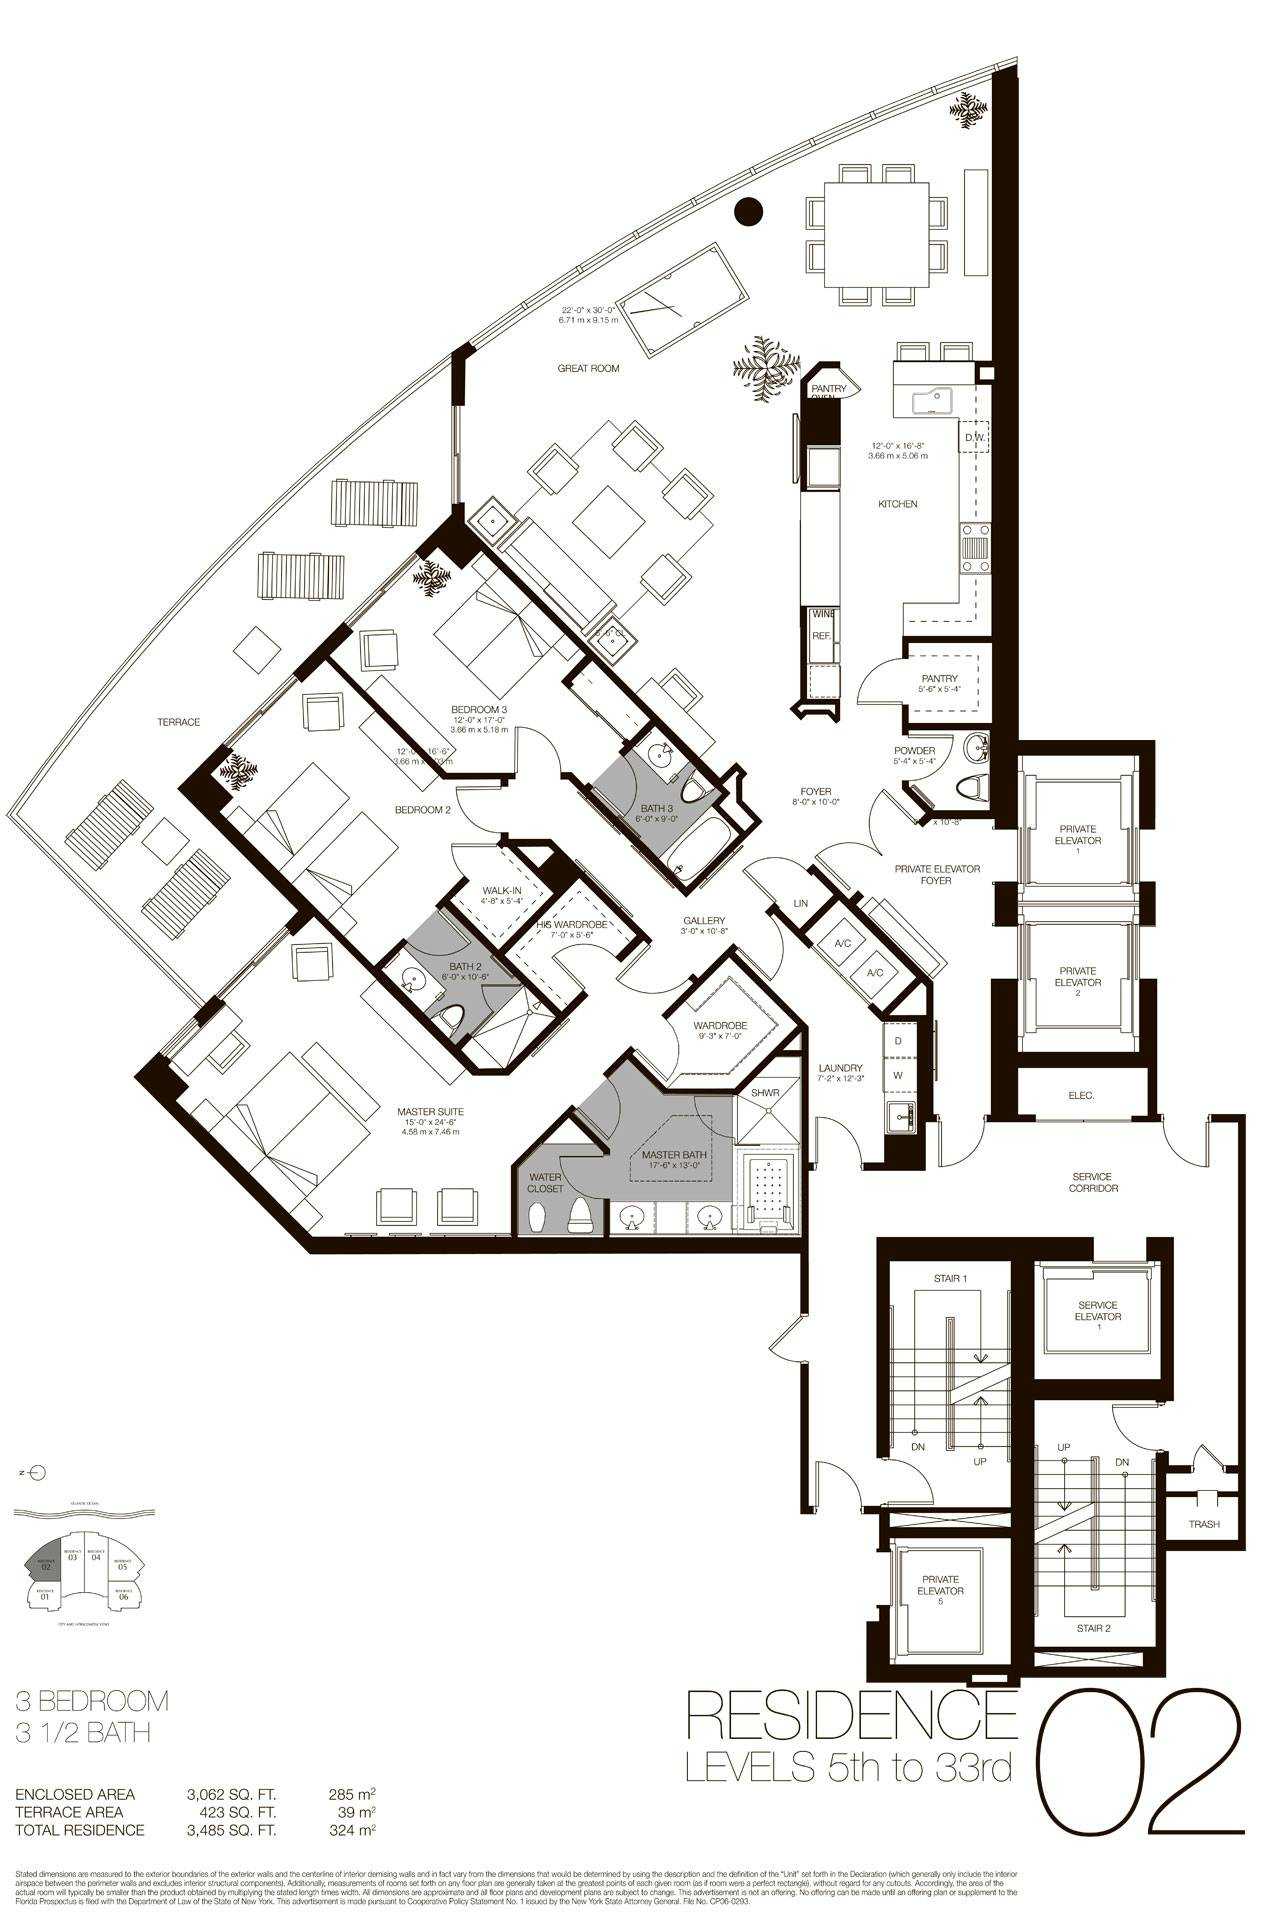 Residences 02 - 05, Level 5-35